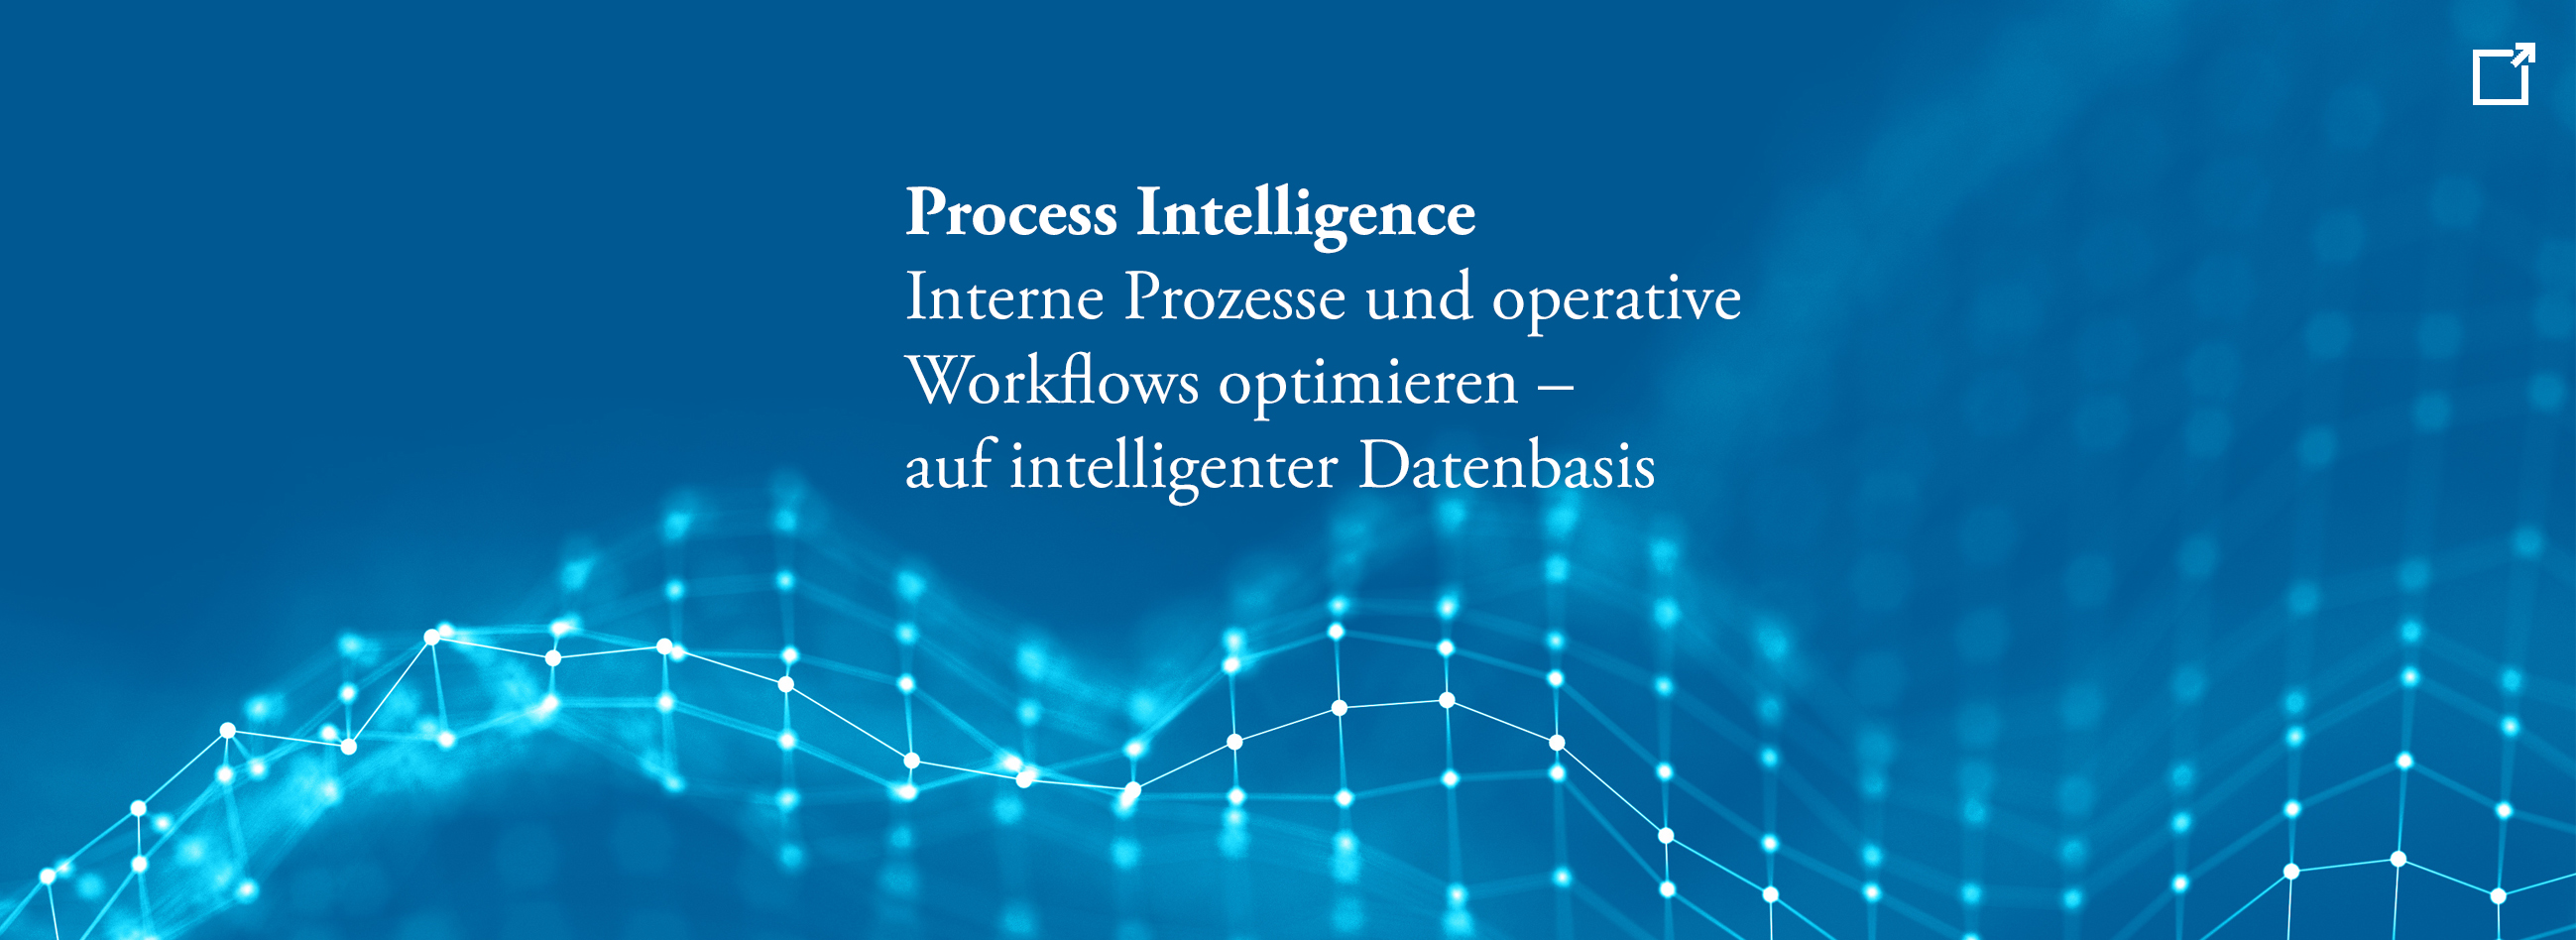 Datenstrategie, Künstliche Intelligenz, Data Governance, Big Data, Process Mining